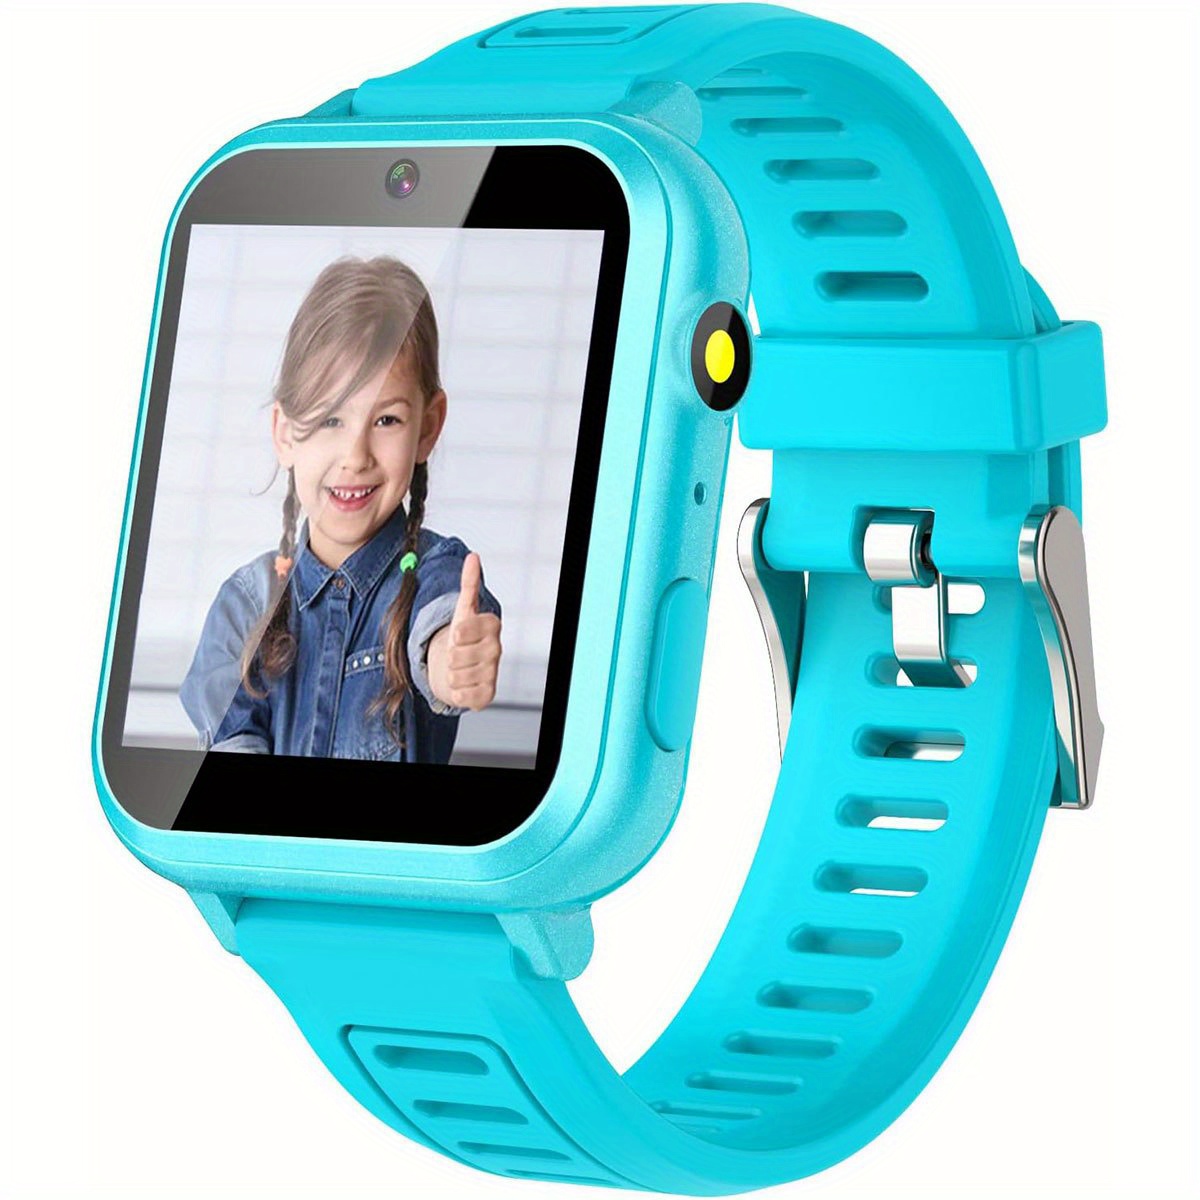  Cosjoype Reloj inteligente mejorado para niños con 26 juegos de  rompecabezas, cámara HD, video, reproductor de MP3, seguimiento de hábitos,  podómetro, linterna de 12/24 horas, relojes para niños, regalo para niños